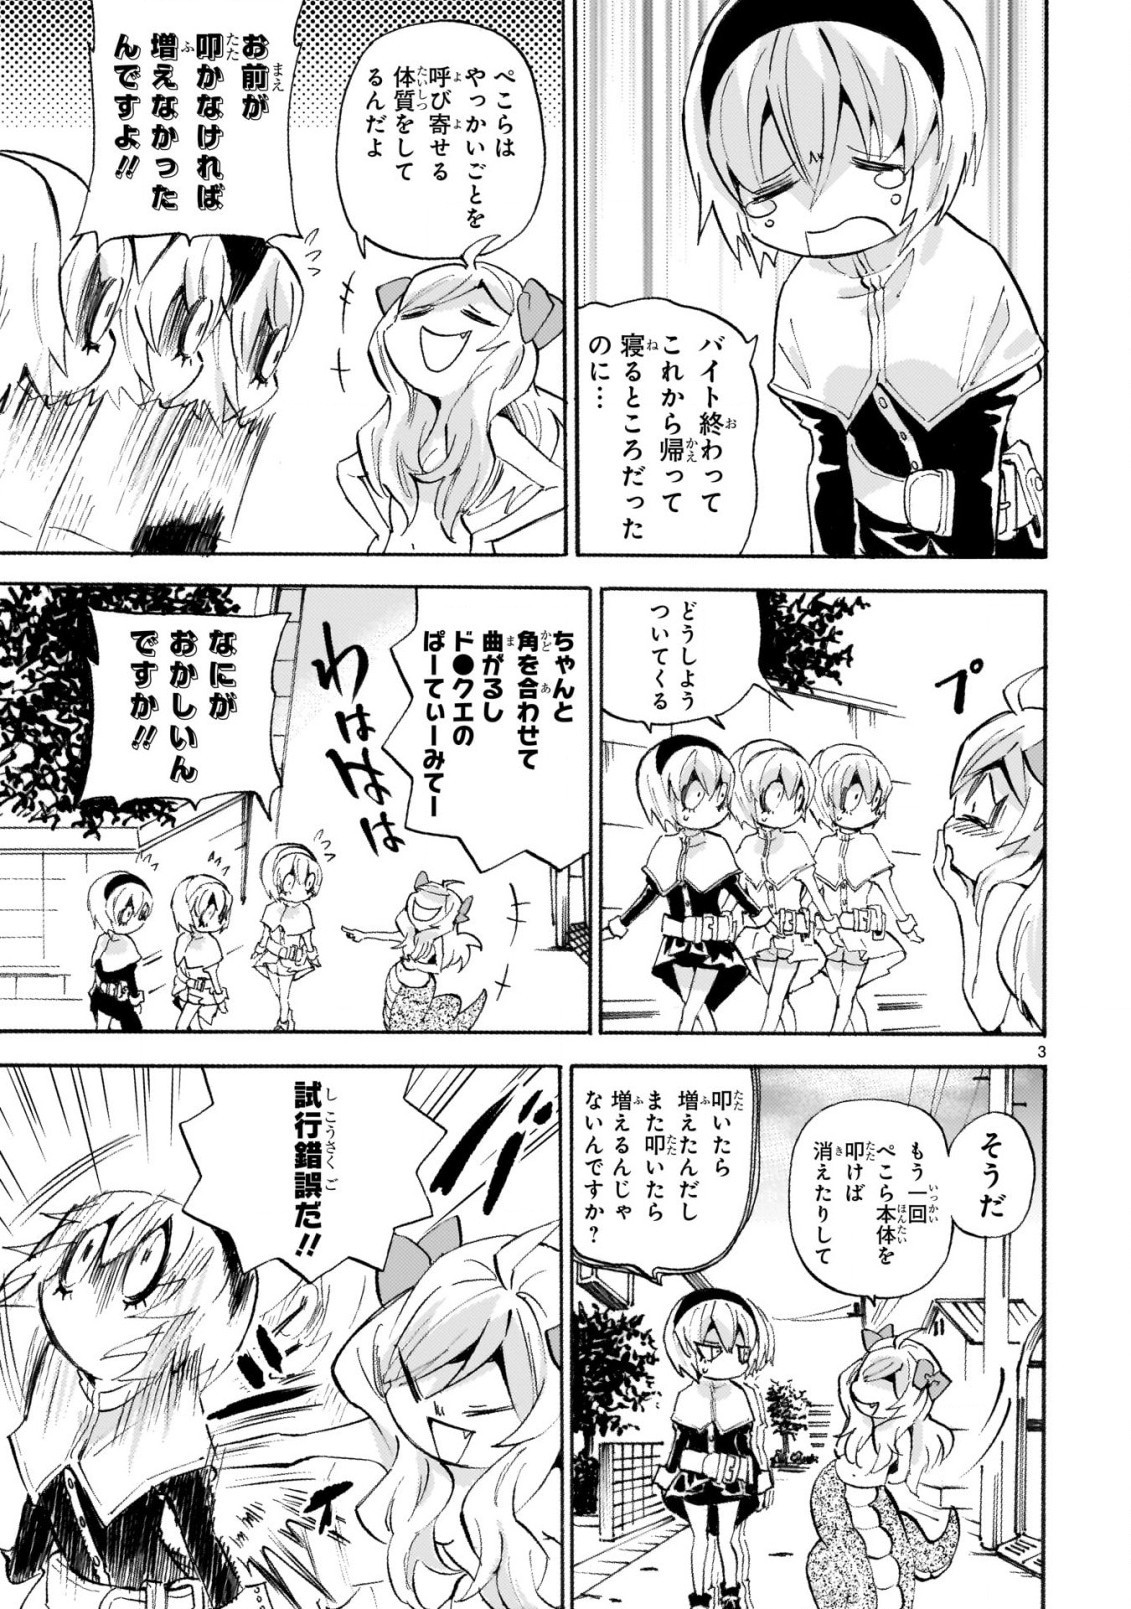 Jashin-chan Dropkick - Chapter 240 - Page 3